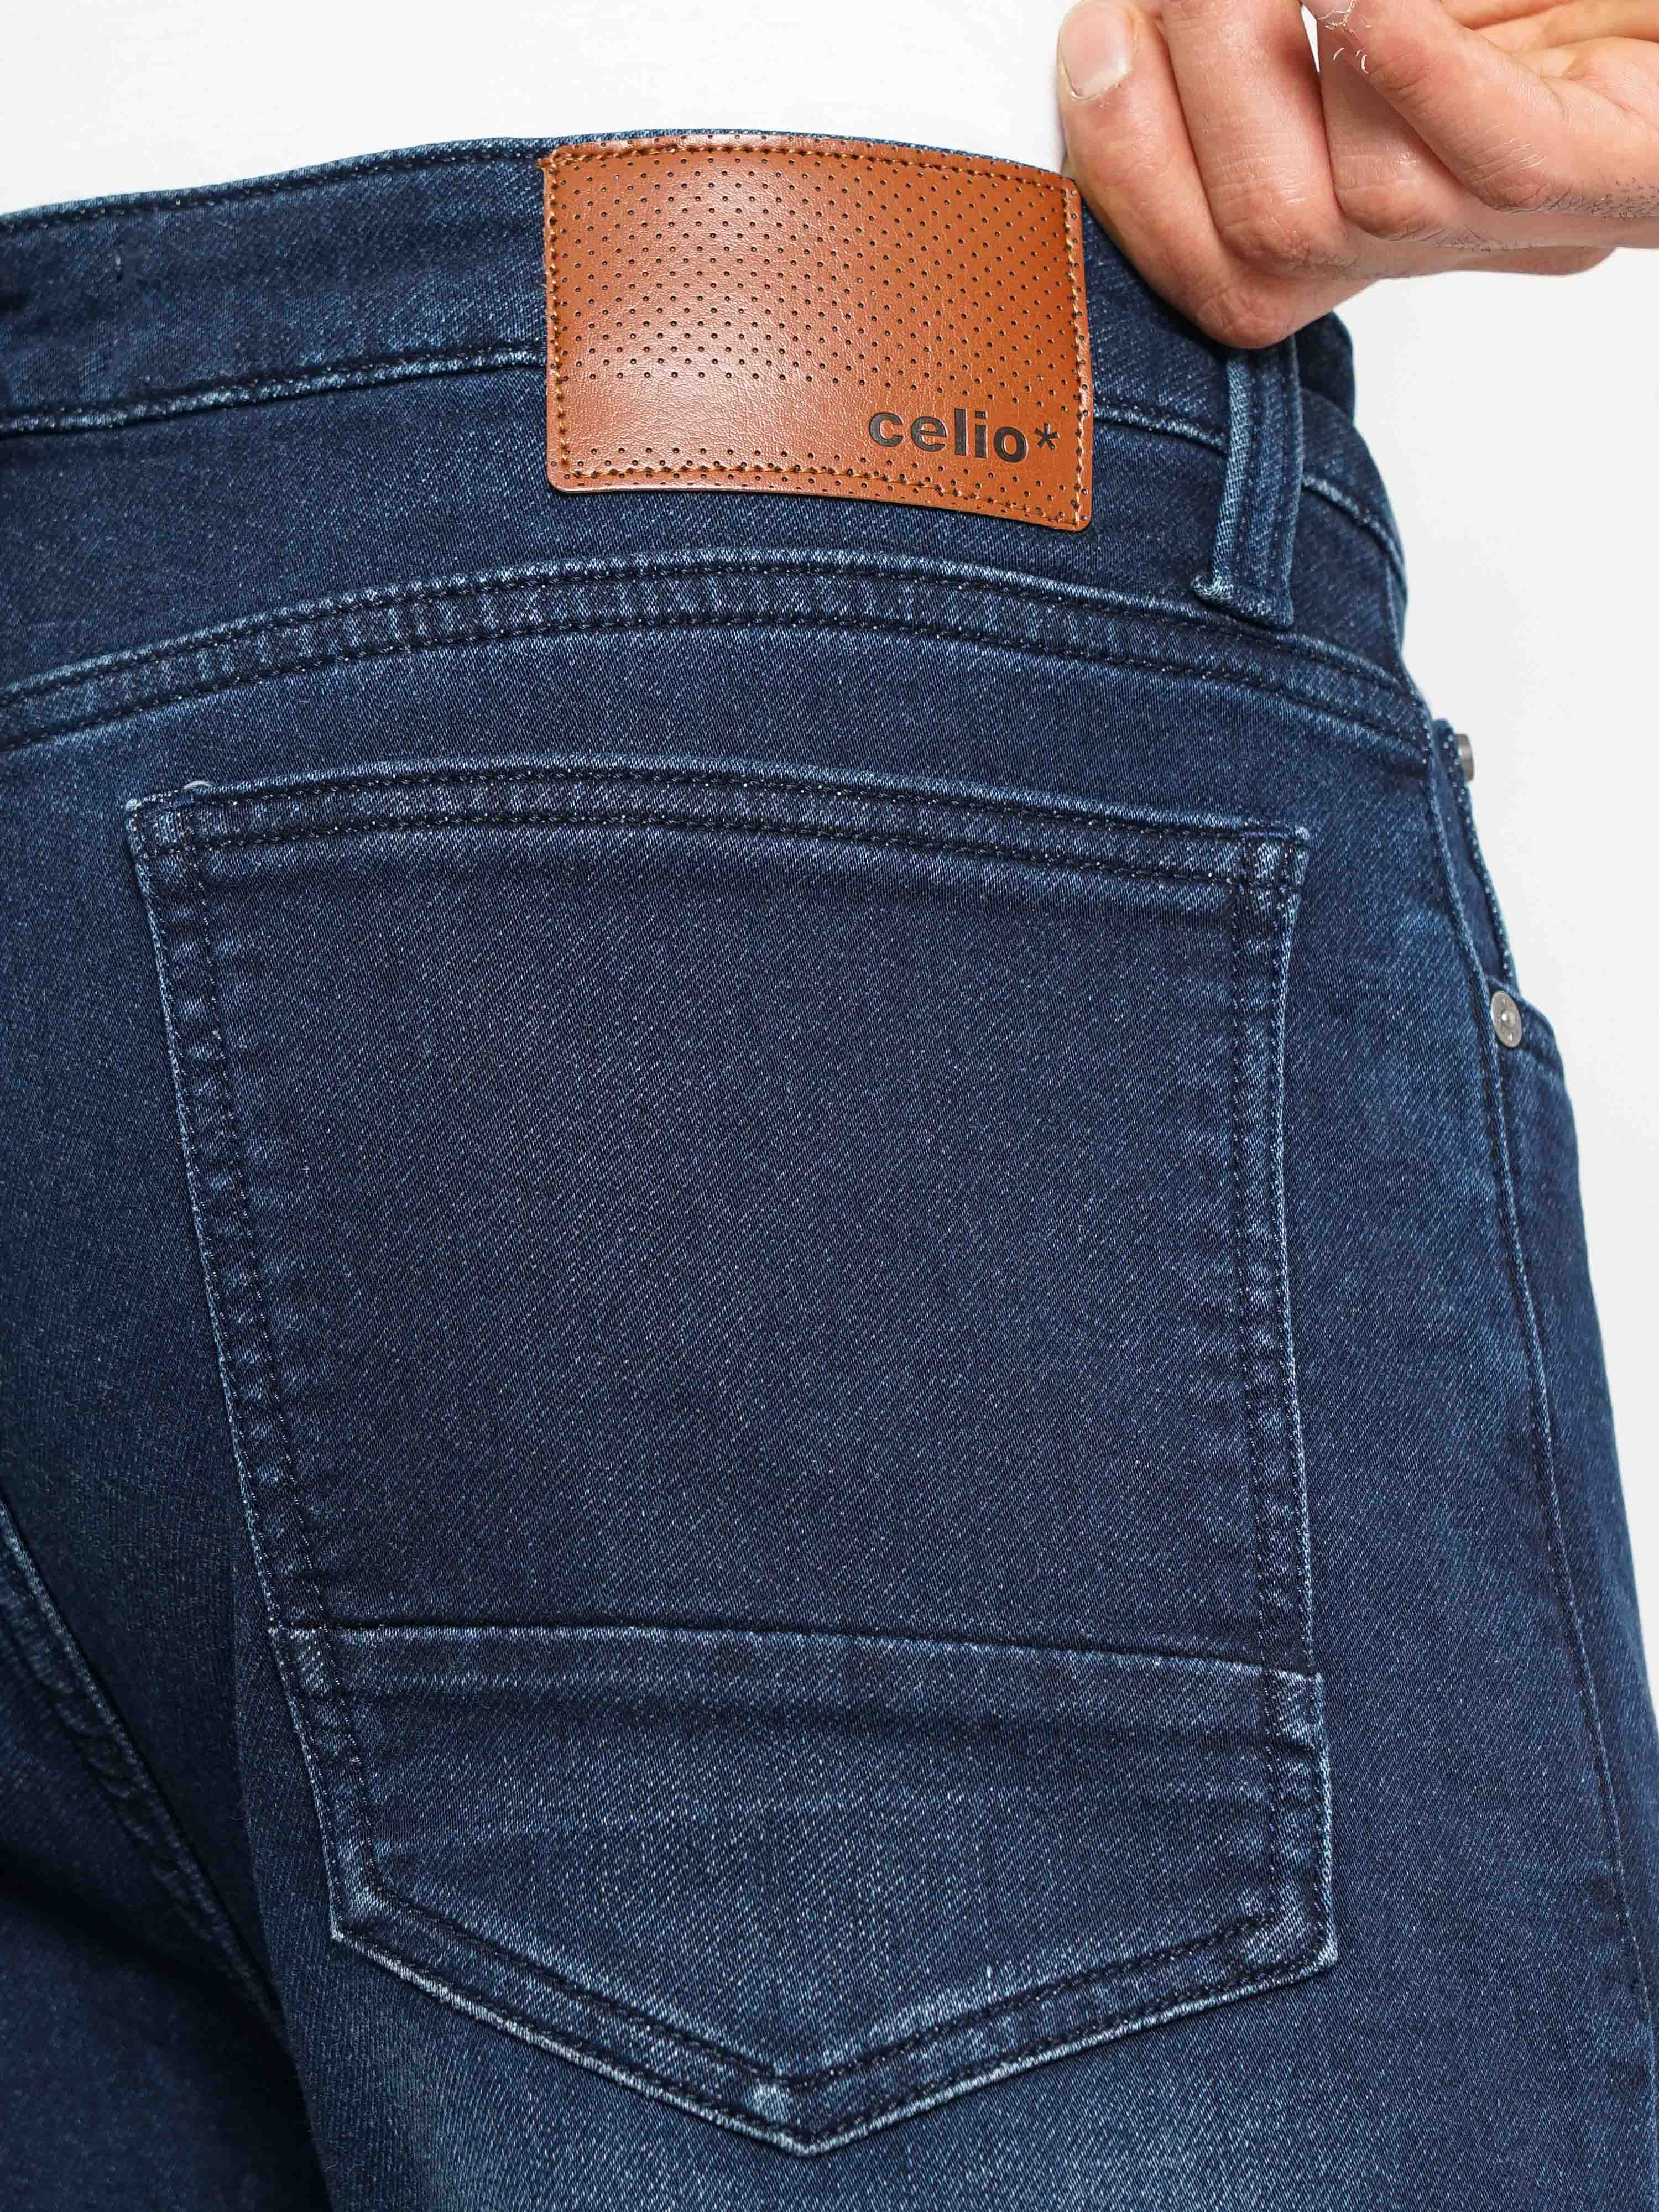 Cotton Spandex Denim Jeans Pant For Men - MST-1 - Acid Wash